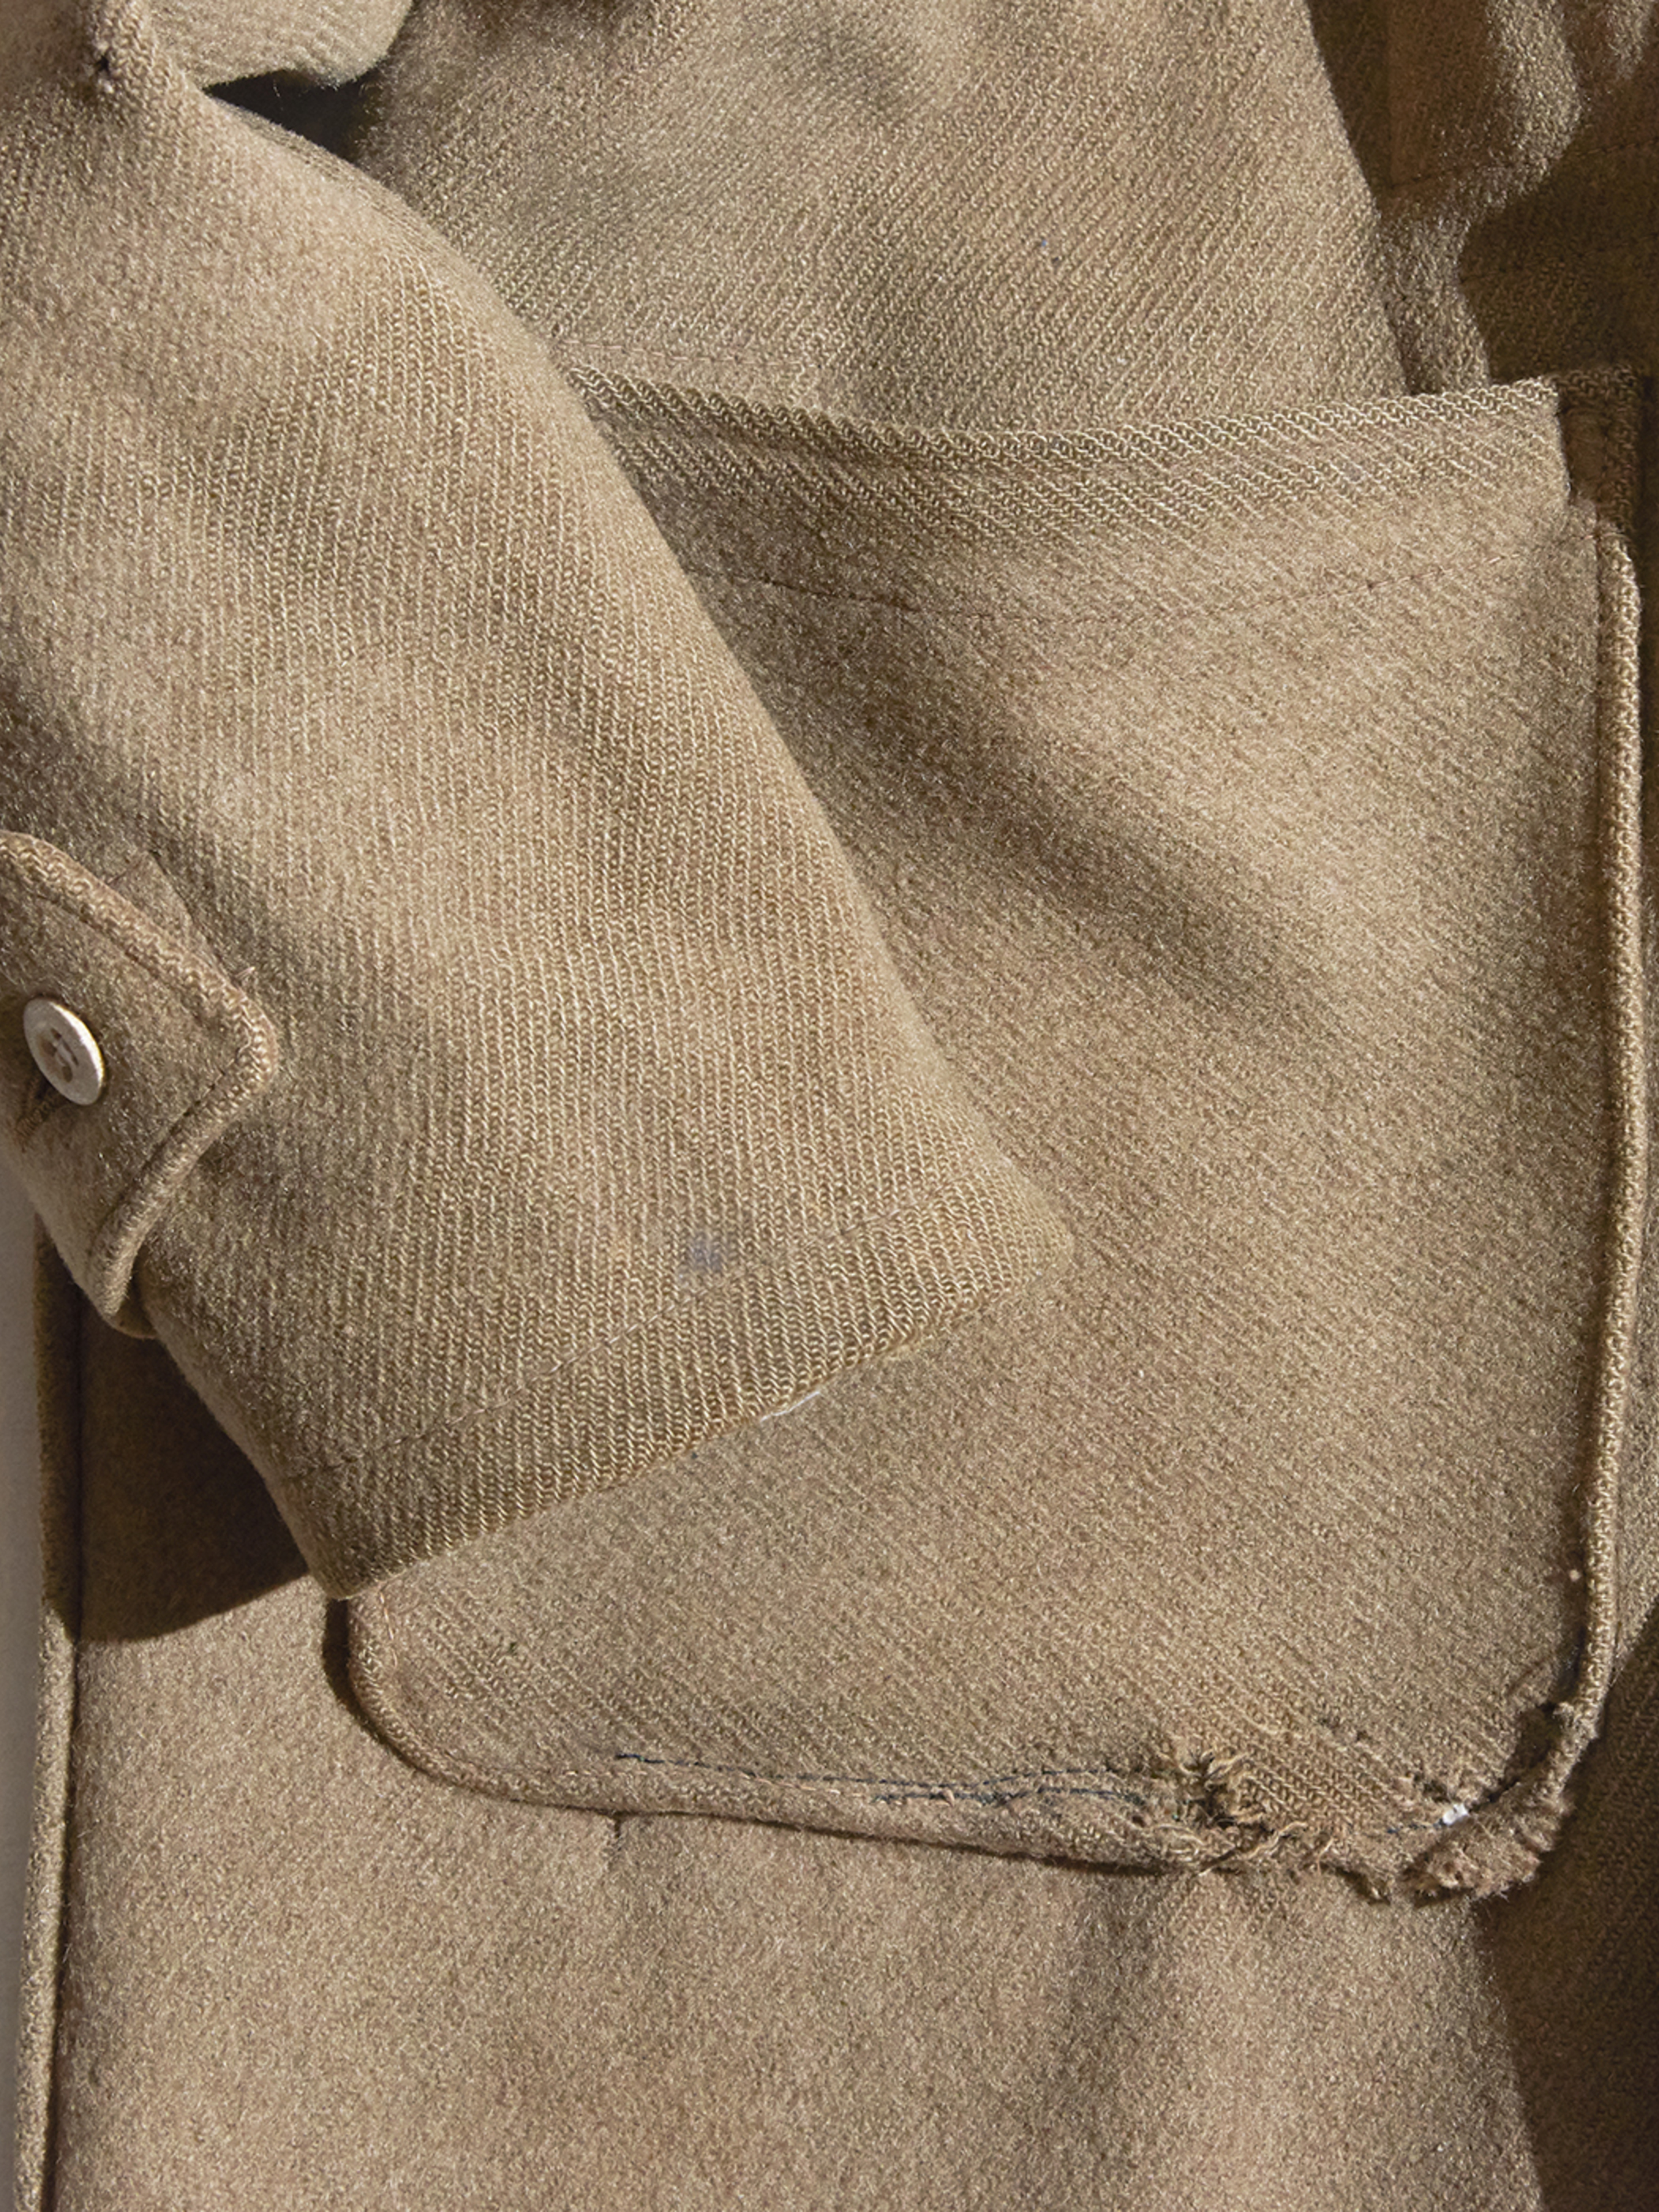 1940s "ROYAL NAVY?" wool coat -KHAKI-